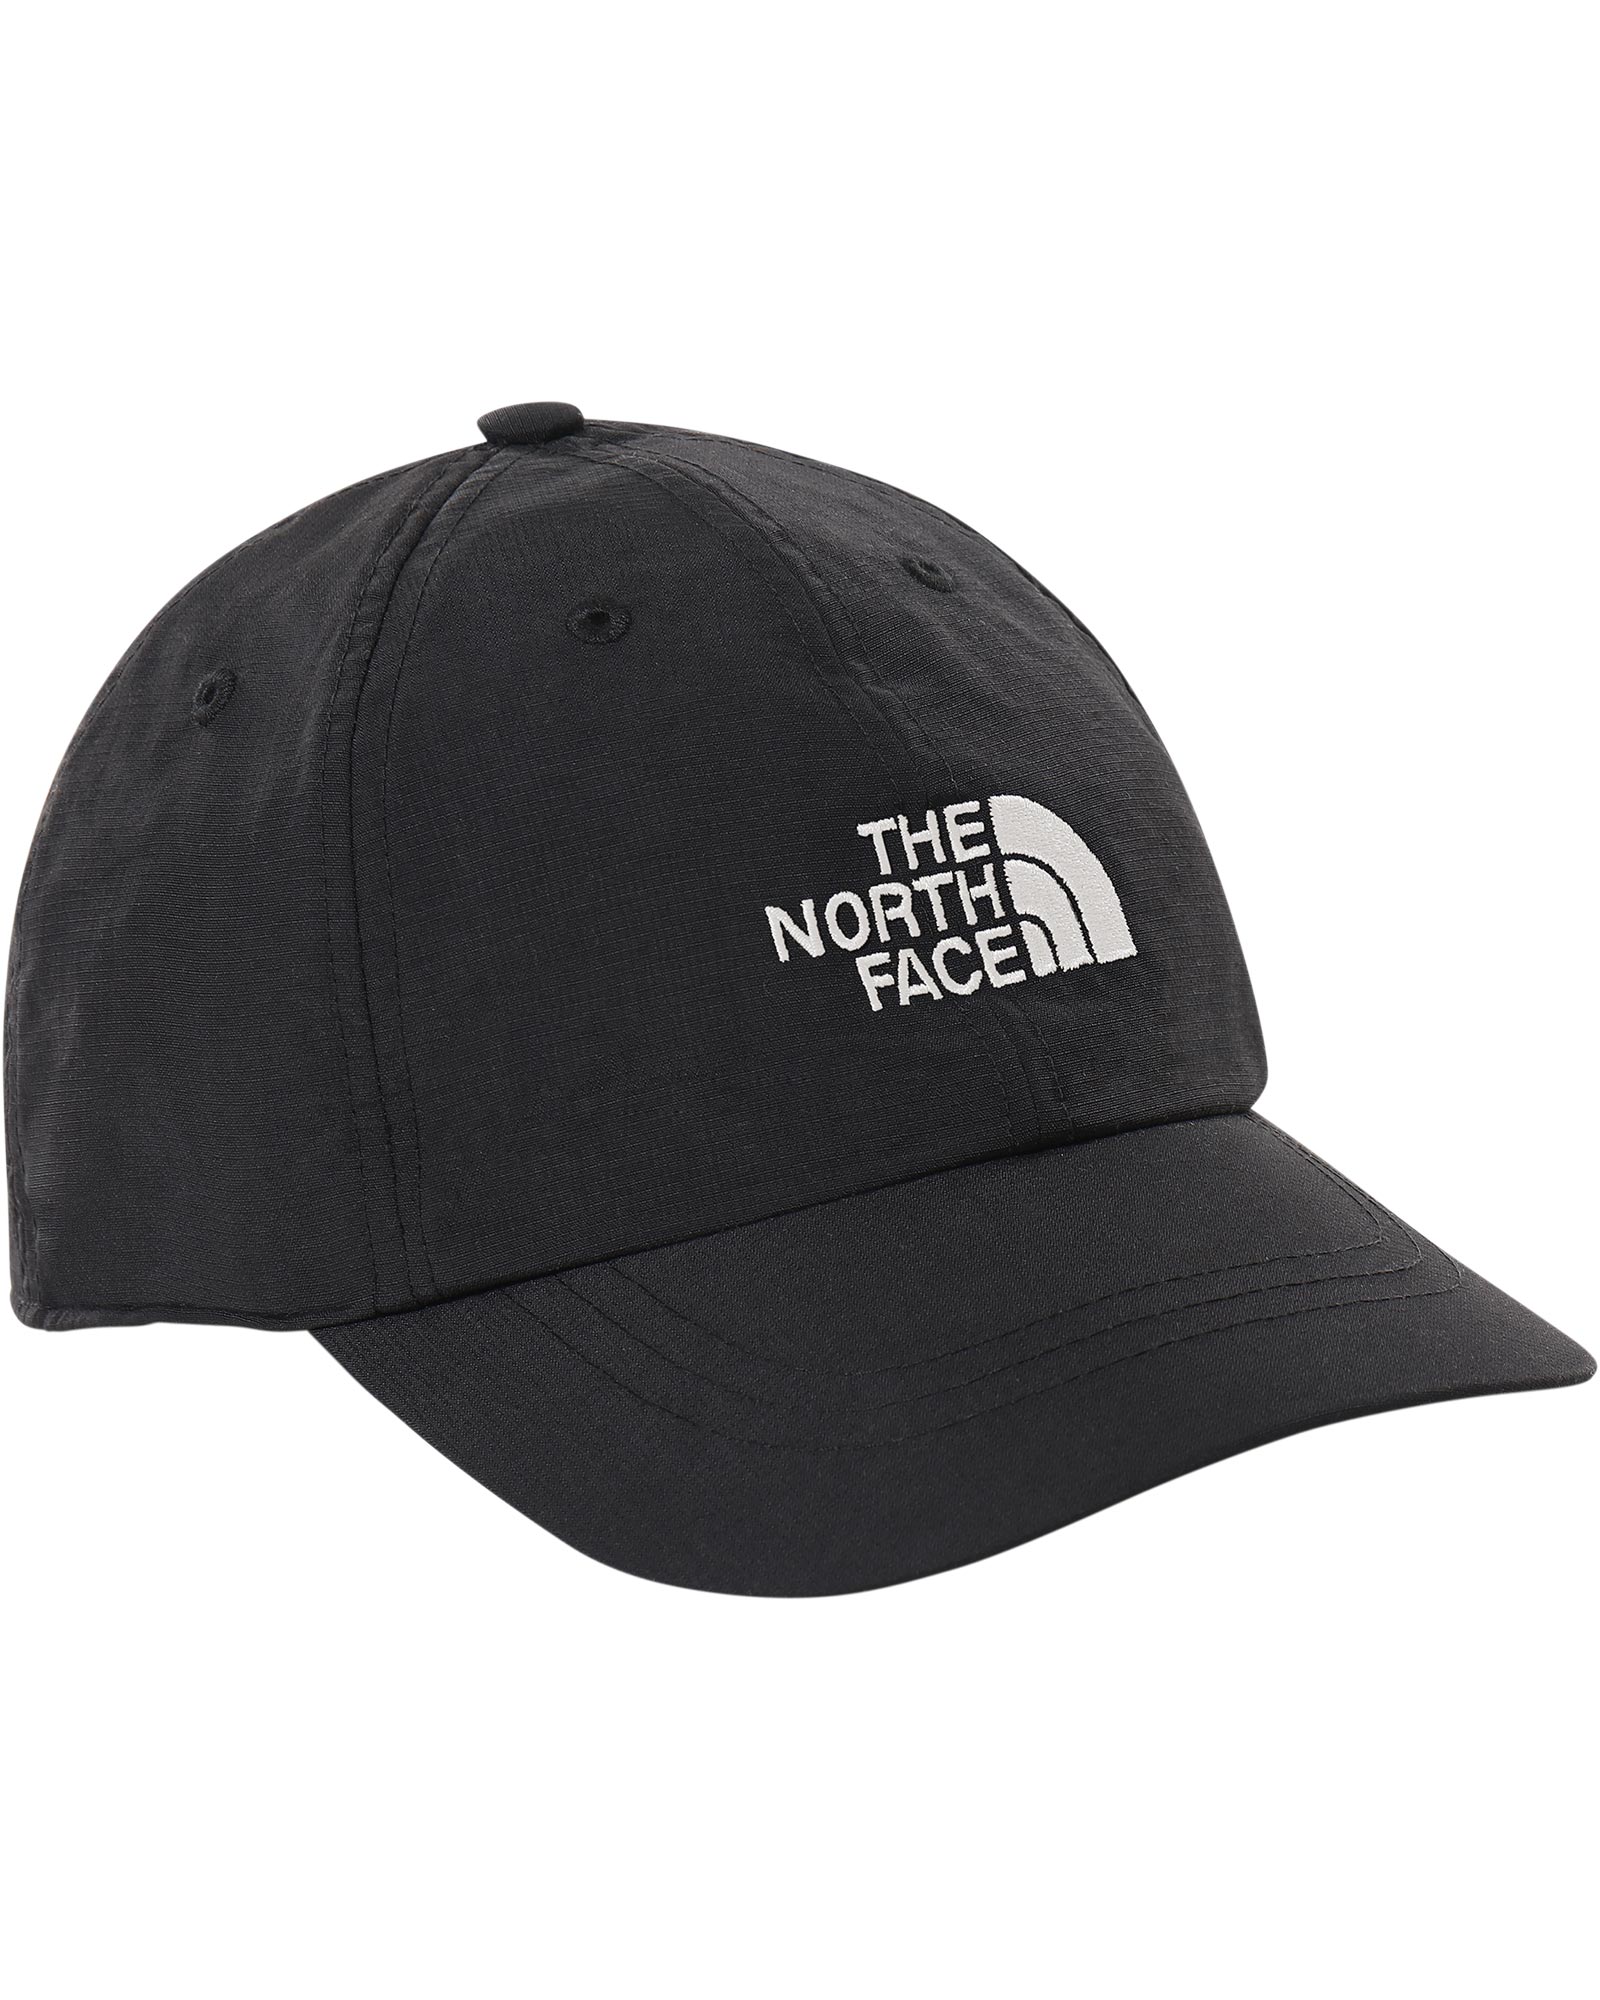 The North Face Horizon Hat | Ellis Brigham